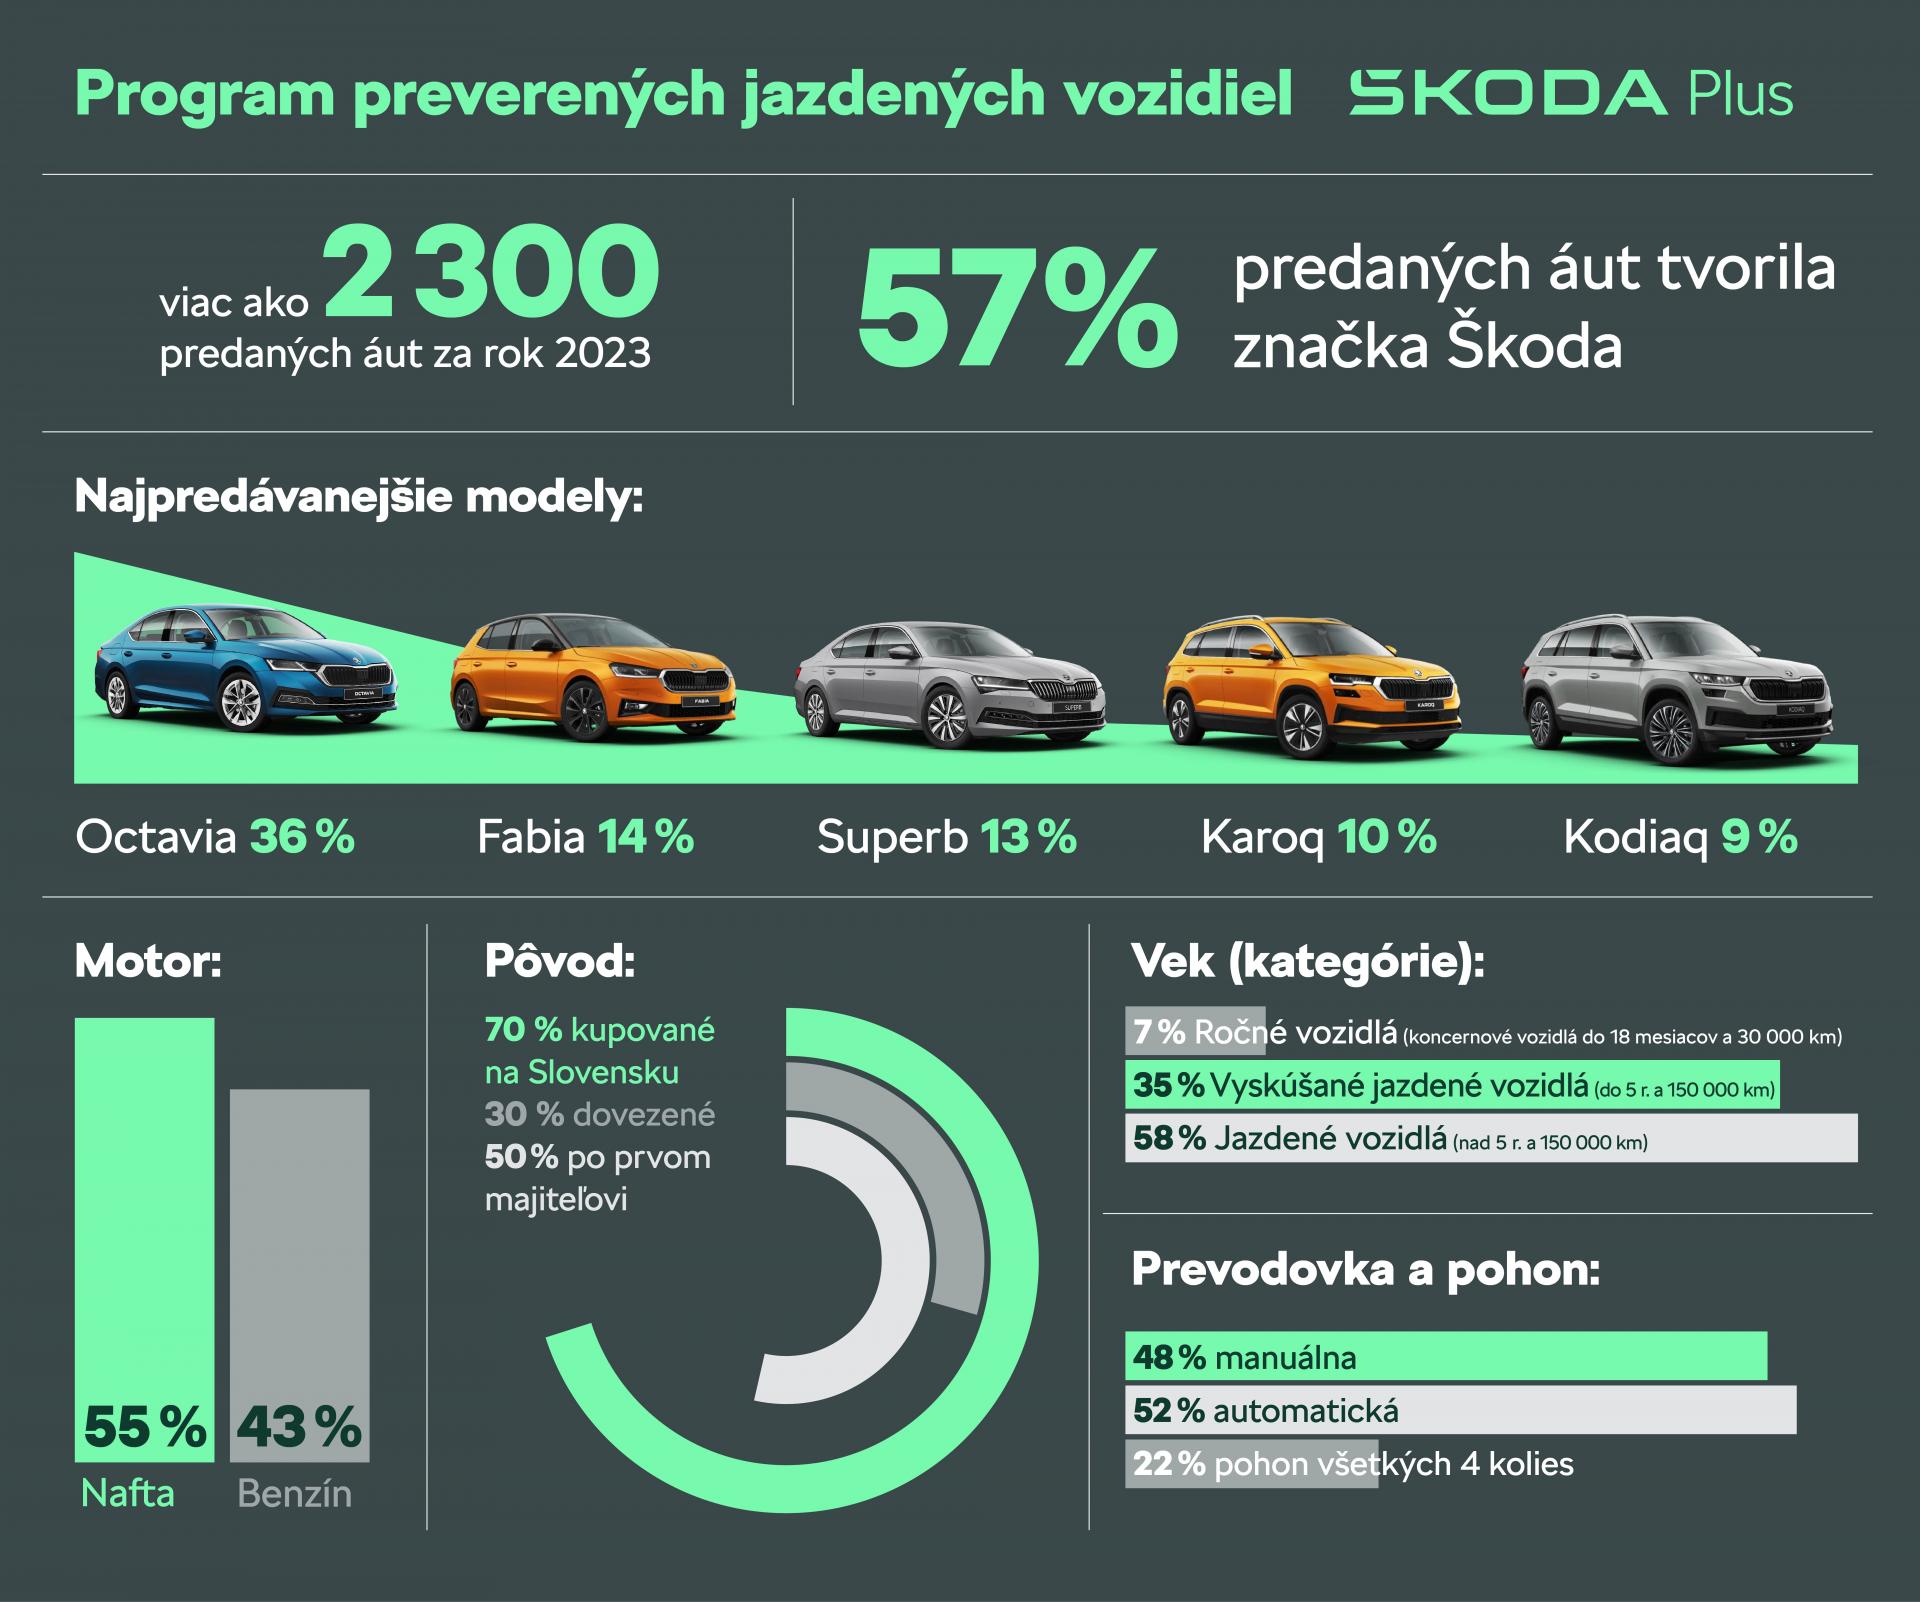 Preverené jazdené vozidlá z certifikovaného programu Škoda Plus sú k dispozícii na 21 predajných miestach po celej Slovenskej republike. Pravidelne aktualizovaný zoznam ponúkaných modelov nájdu záujemcovia na oficiálnej stránke programu Škoda Plus. 